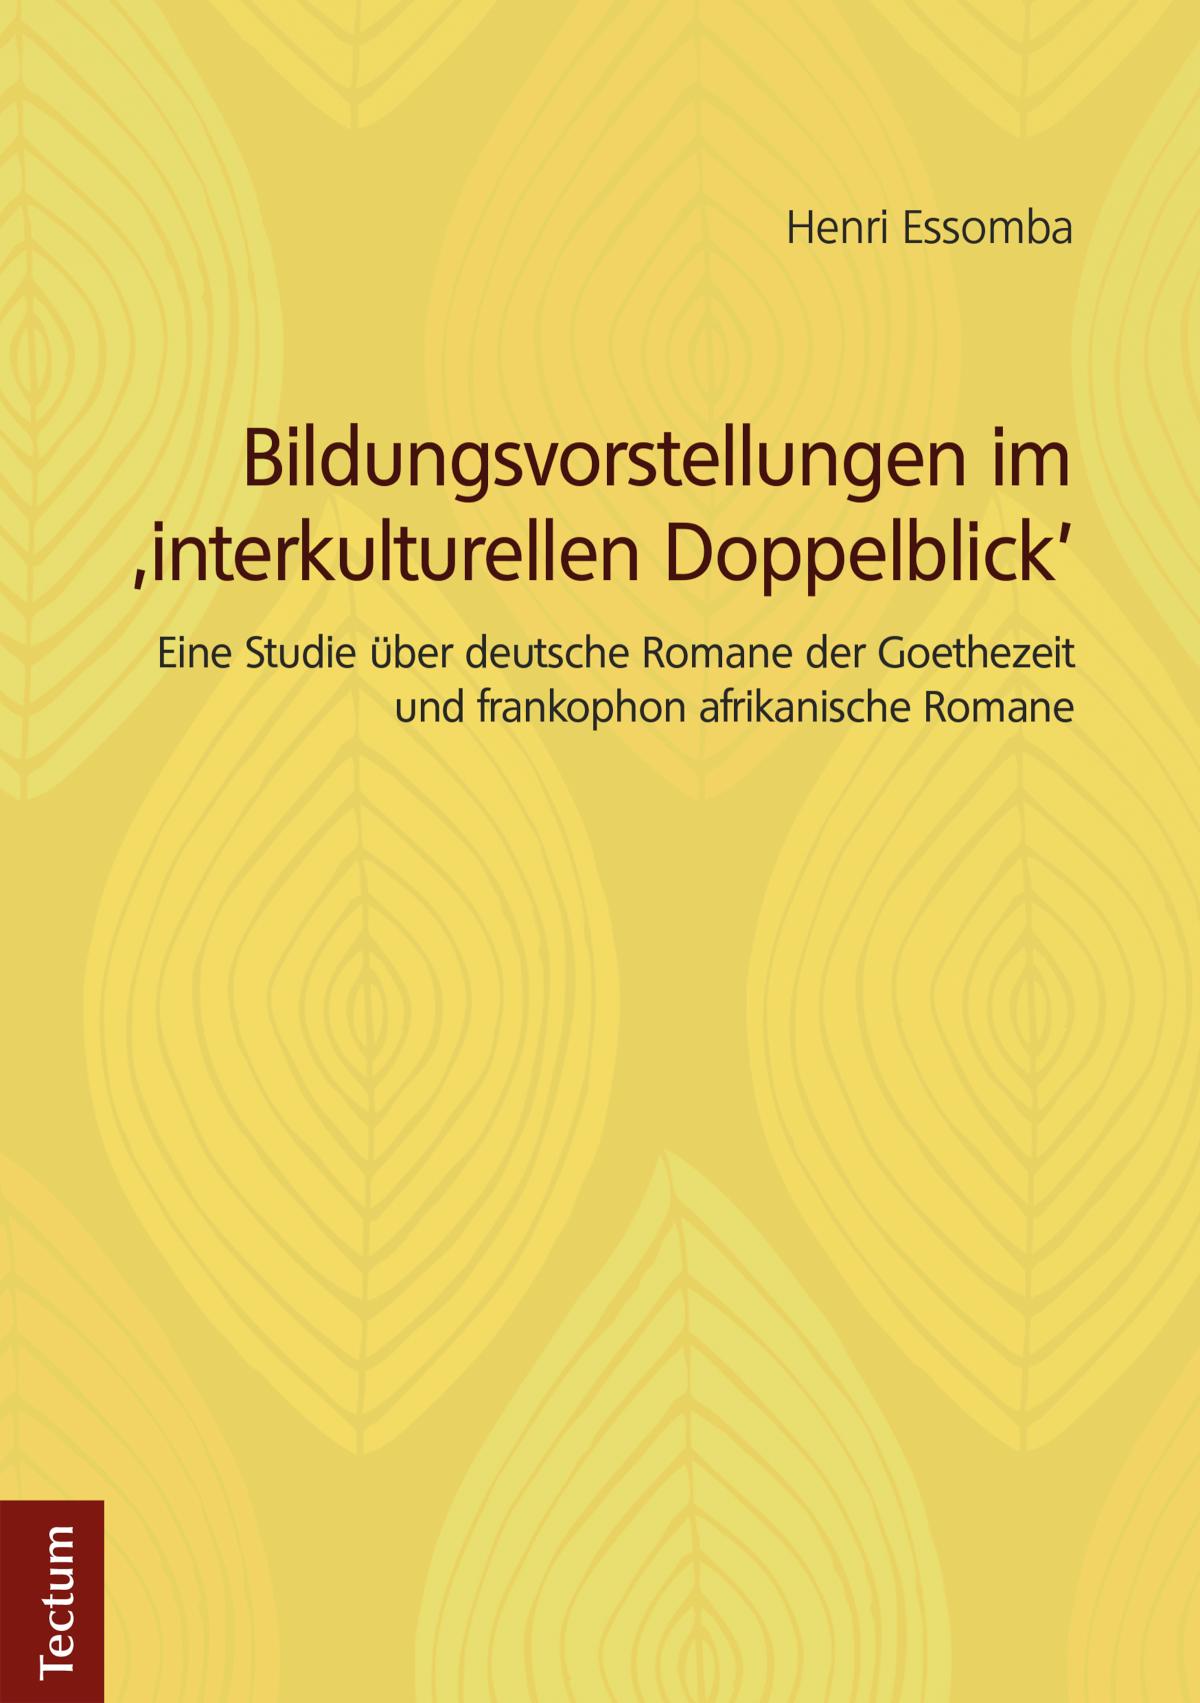 Bildungsvorstellungen im 'interkulturellen Doppelblick' Eine Studie über deutsche Romane der Goethezeit und frankophon afrikanische Romane